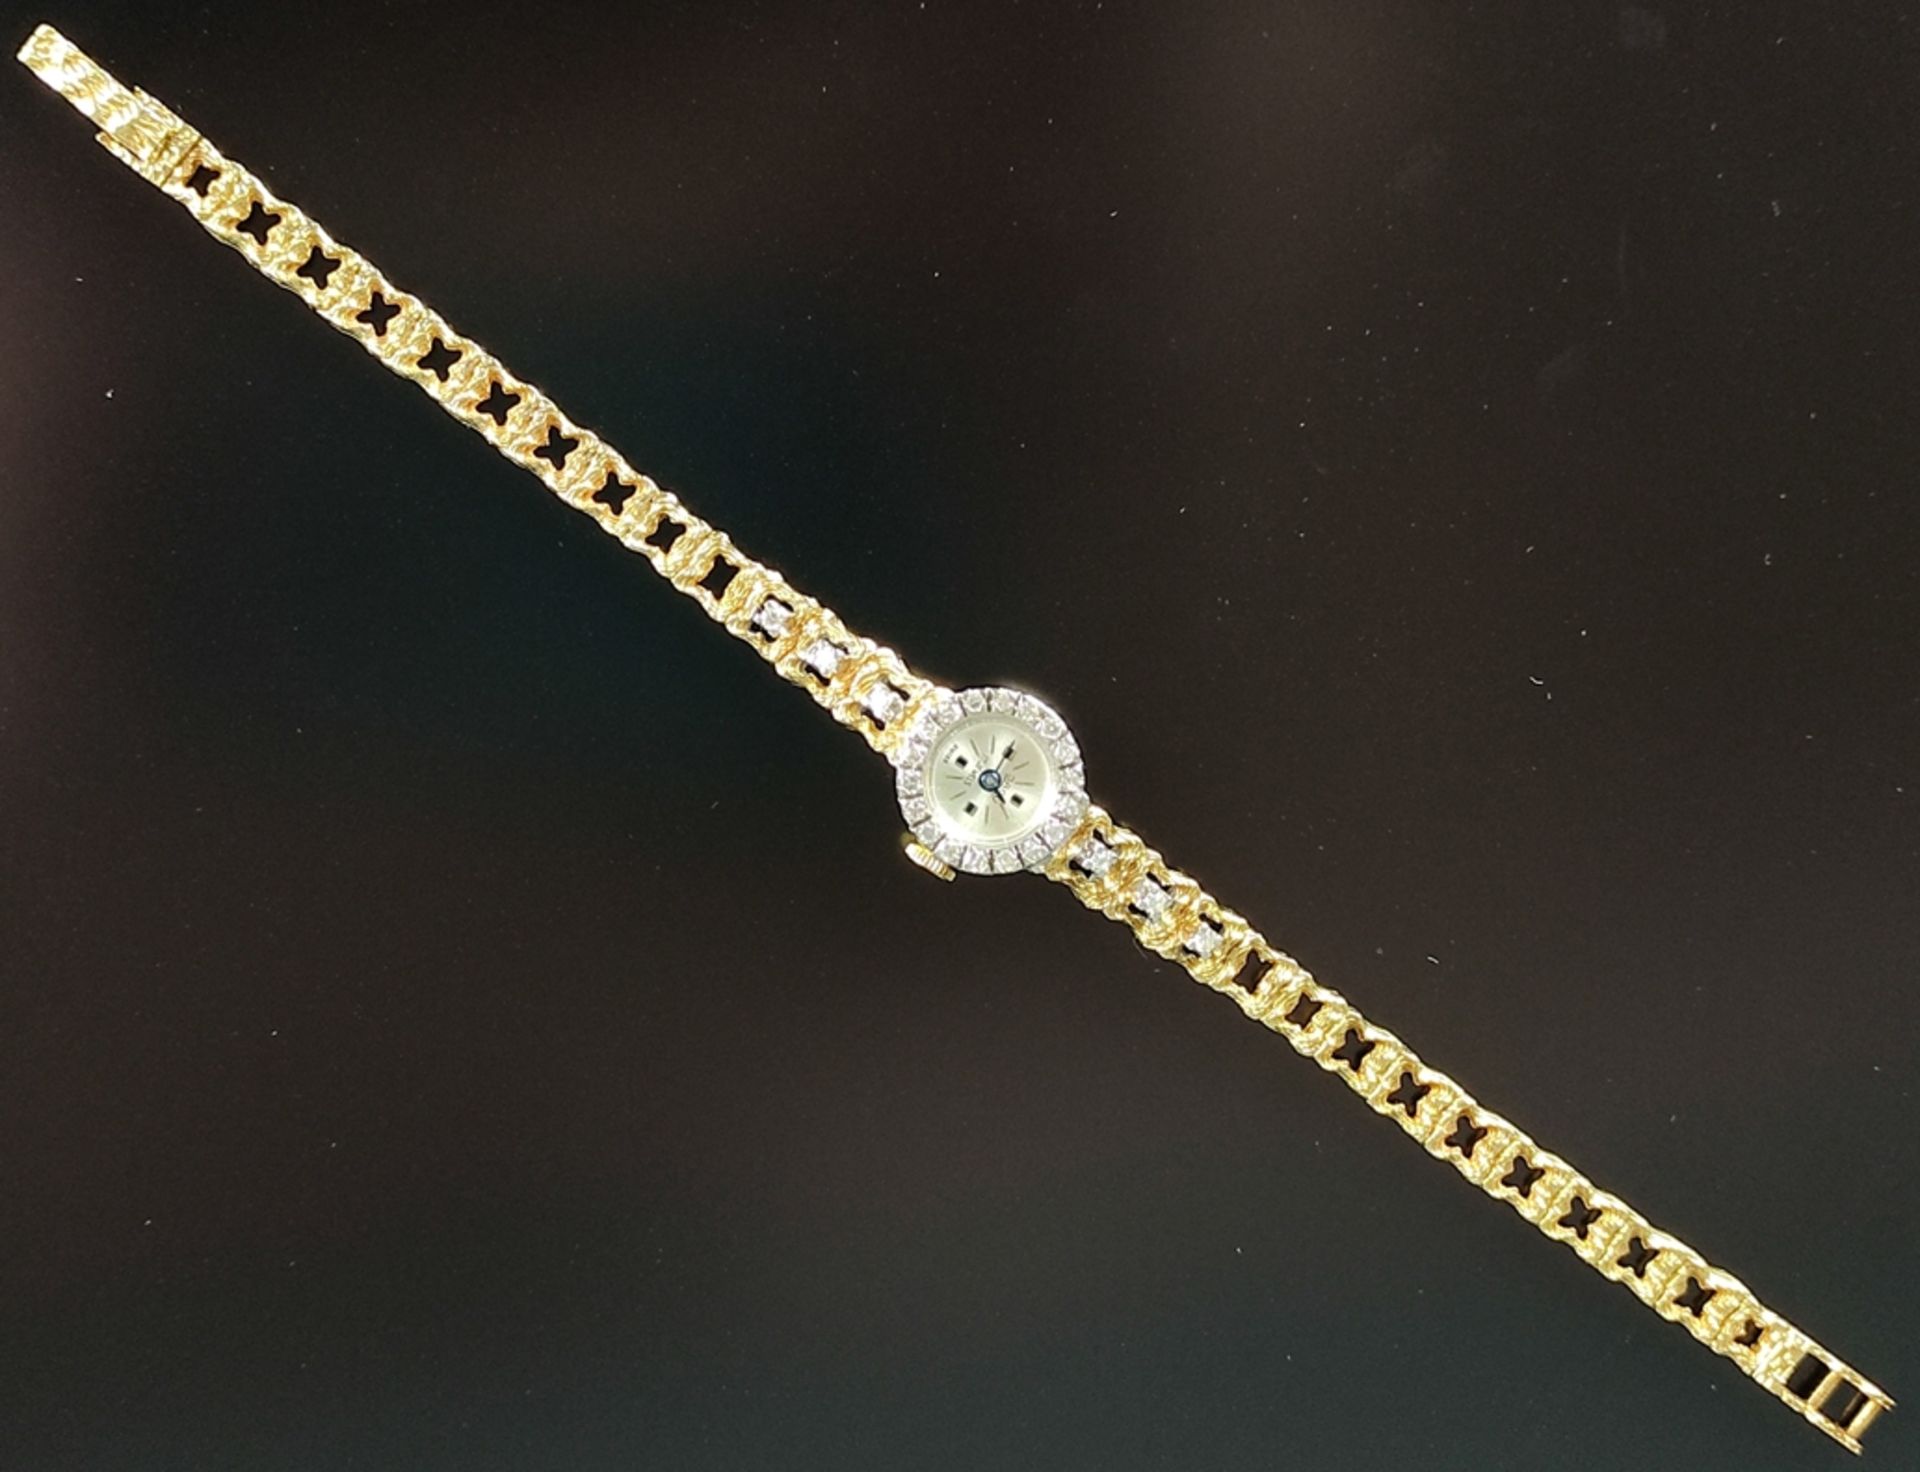 Armbanduhr, Jagu, rundes Ziffernblatt, Rand besetzt mit 18 Brillanten, Durchmesser 1,5cm, durchbroc - Bild 4 aus 4